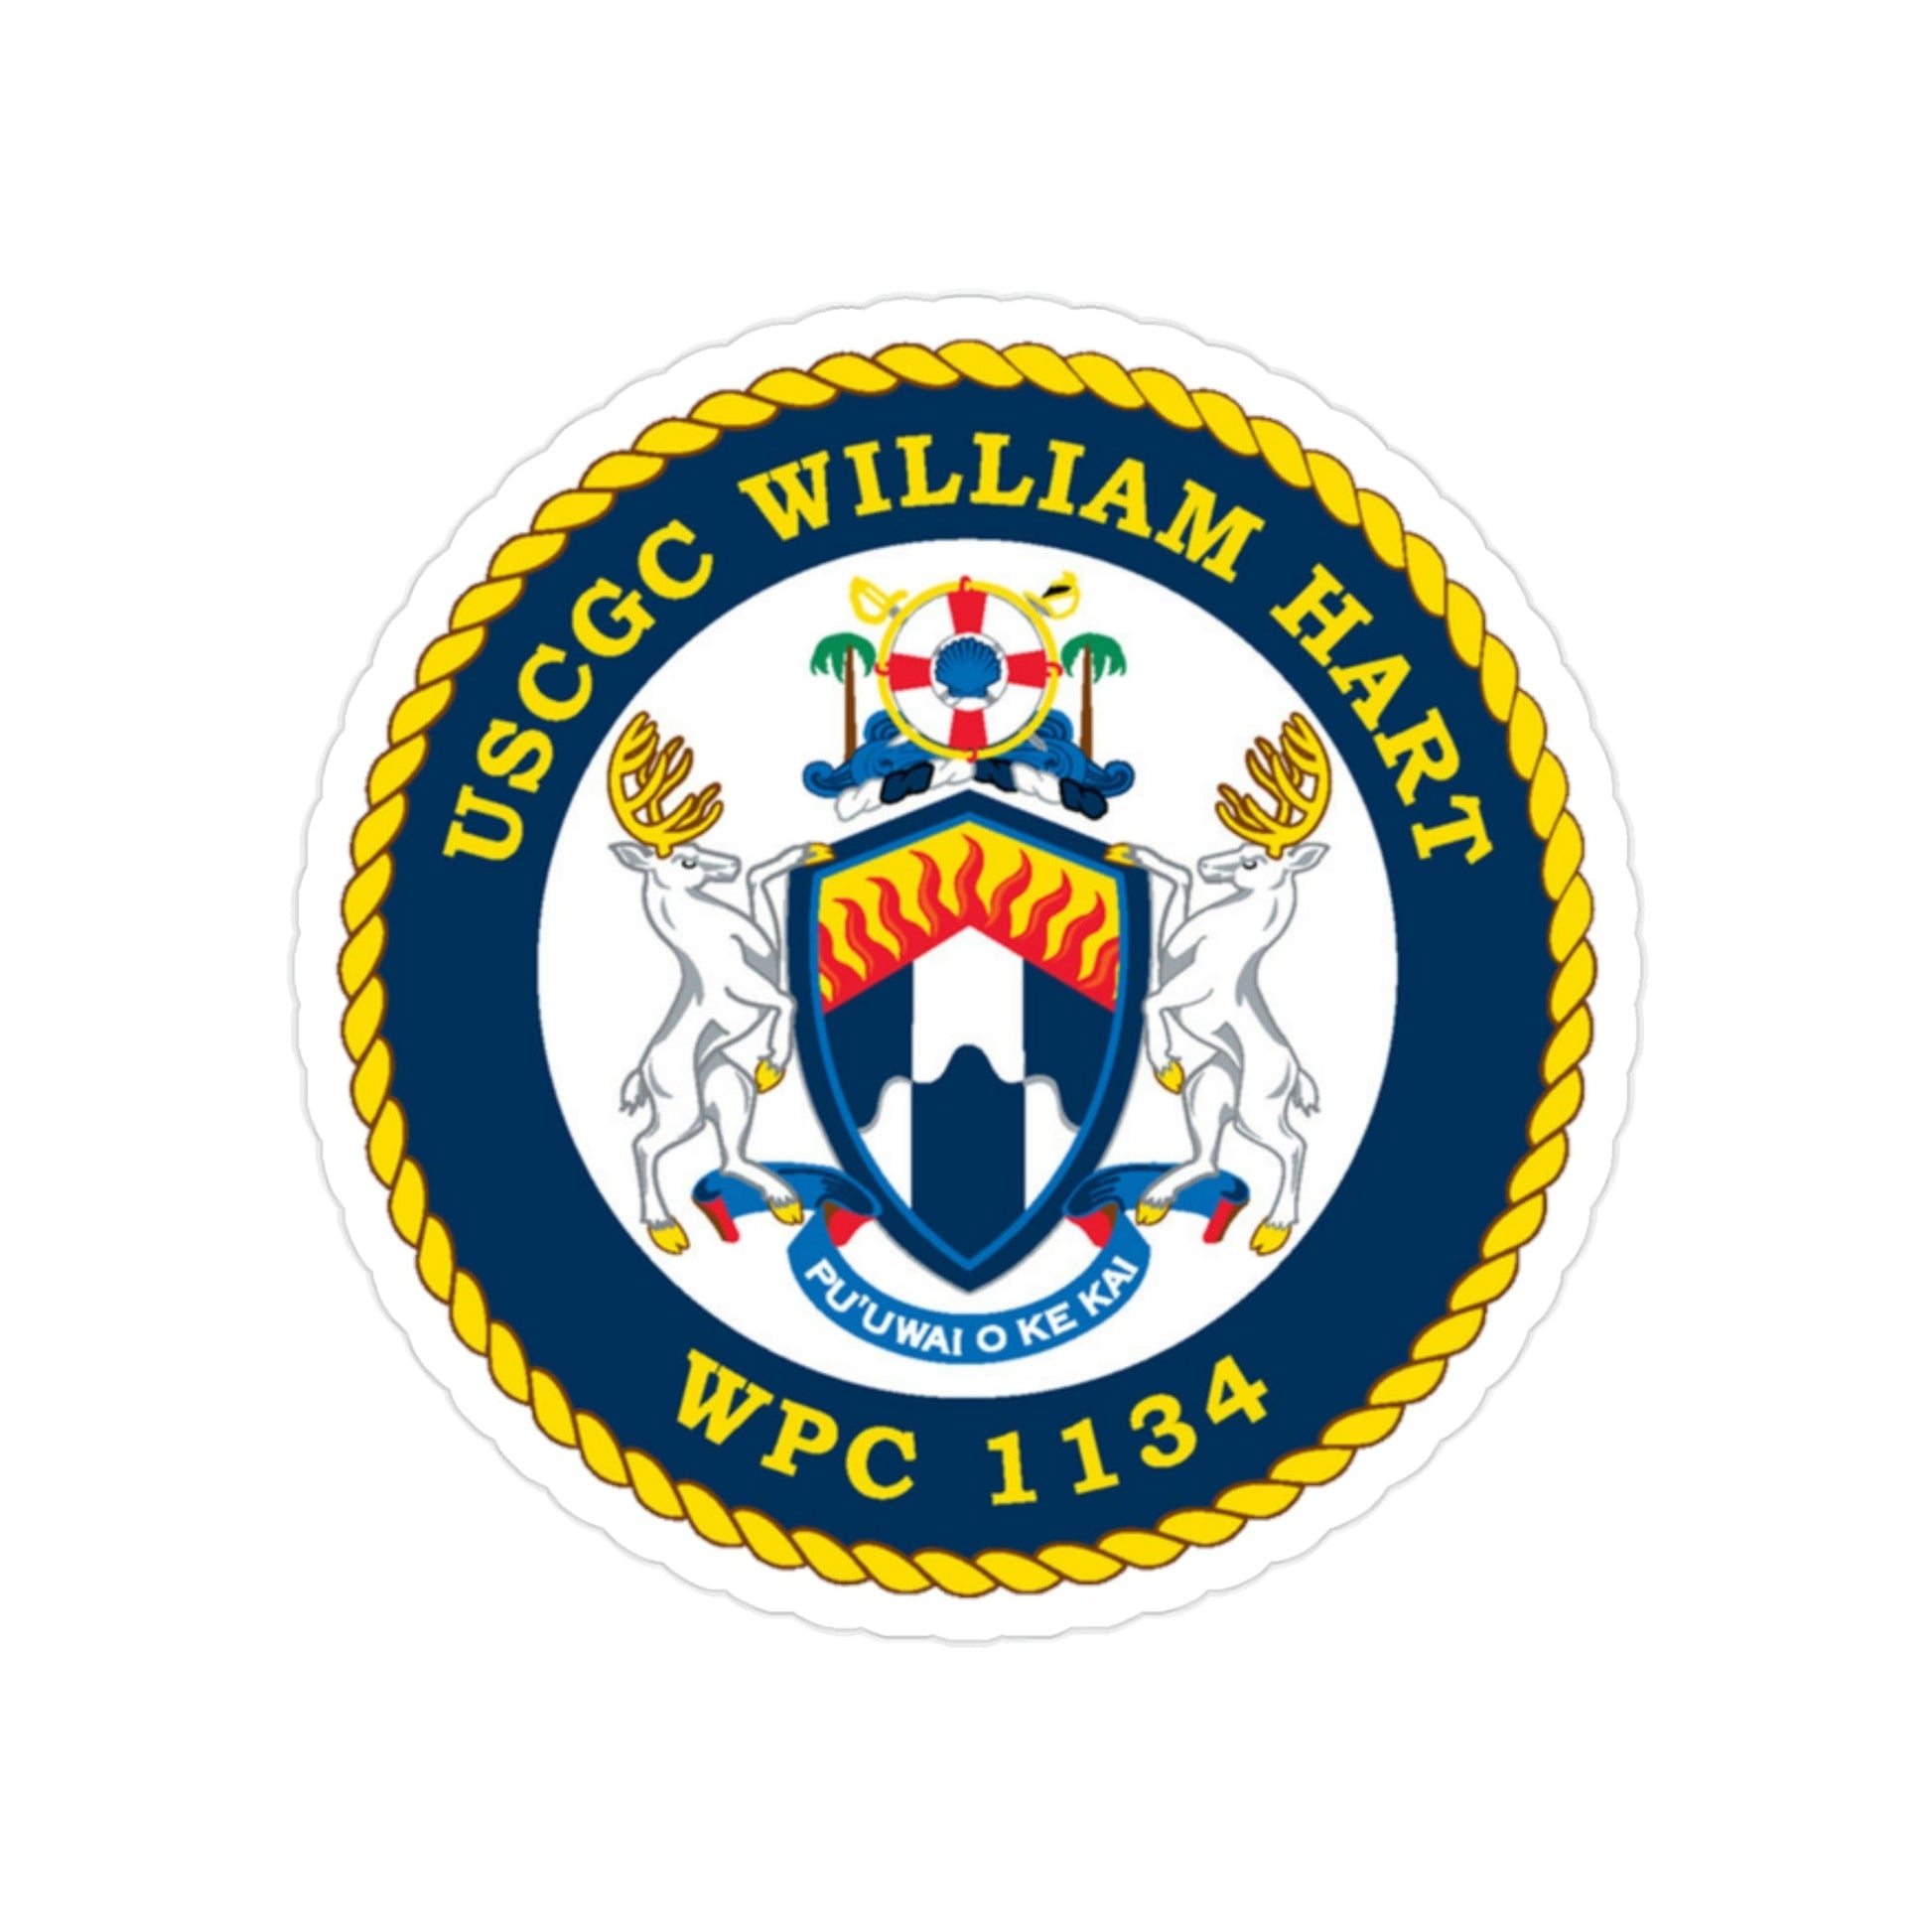 USCG C William Hart WPC 1134 (U.S. Coast Guard) Transparent STICKER Die-Cut Vinyl Decal-2 Inch-The Sticker Space